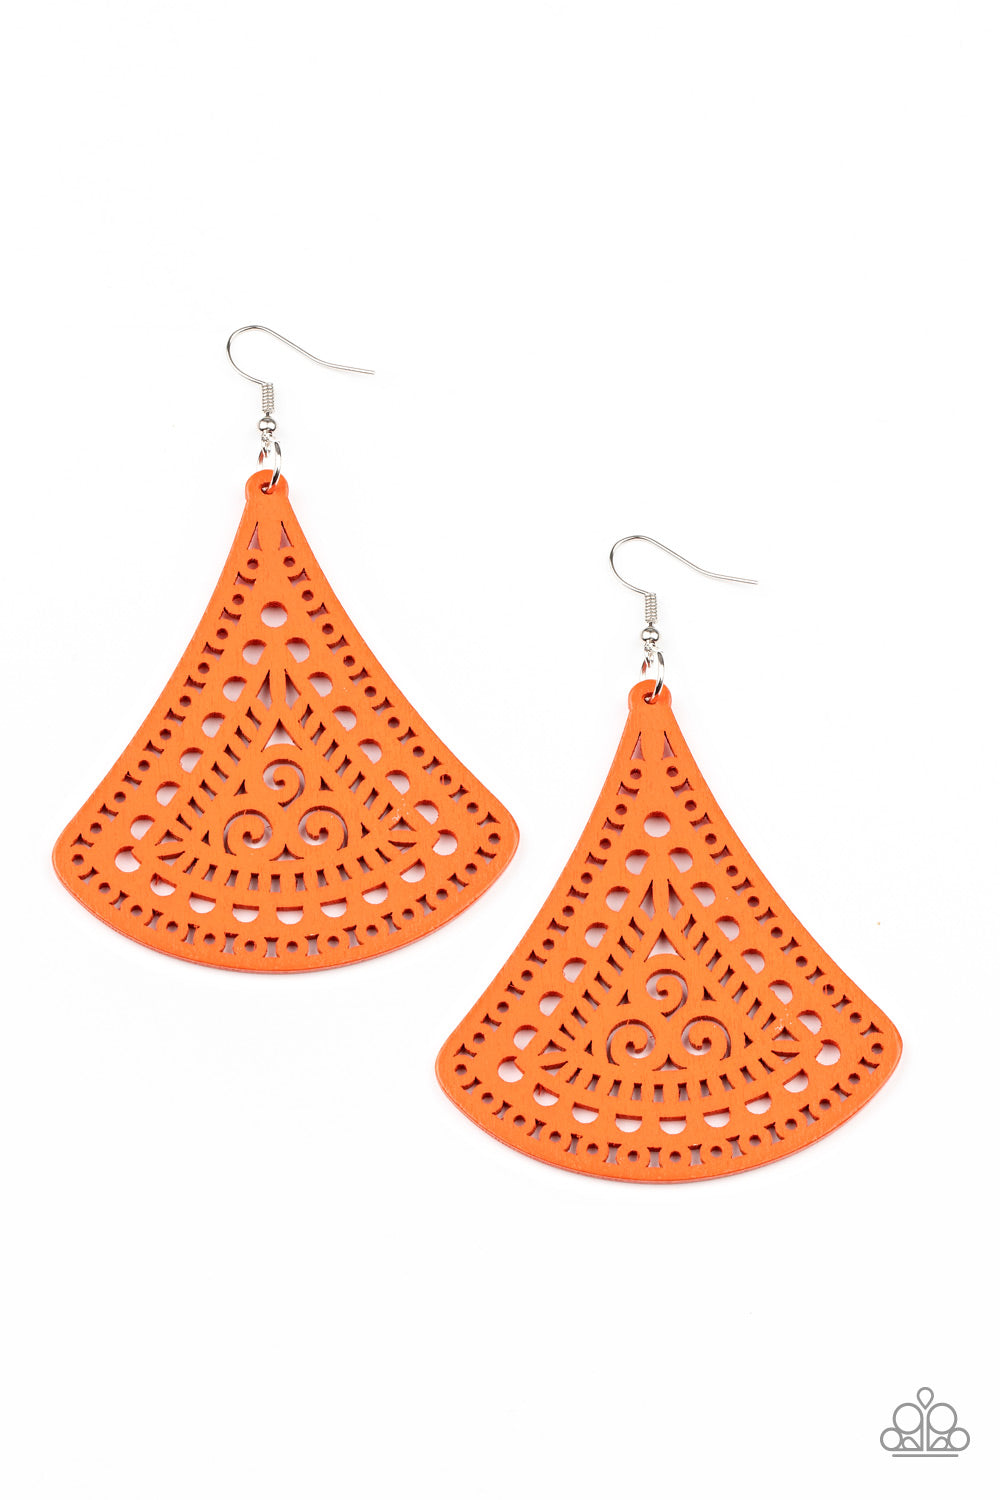 Paparazzi FAN to FAN - Orange Earrings - A Finishing Touch Jewelry